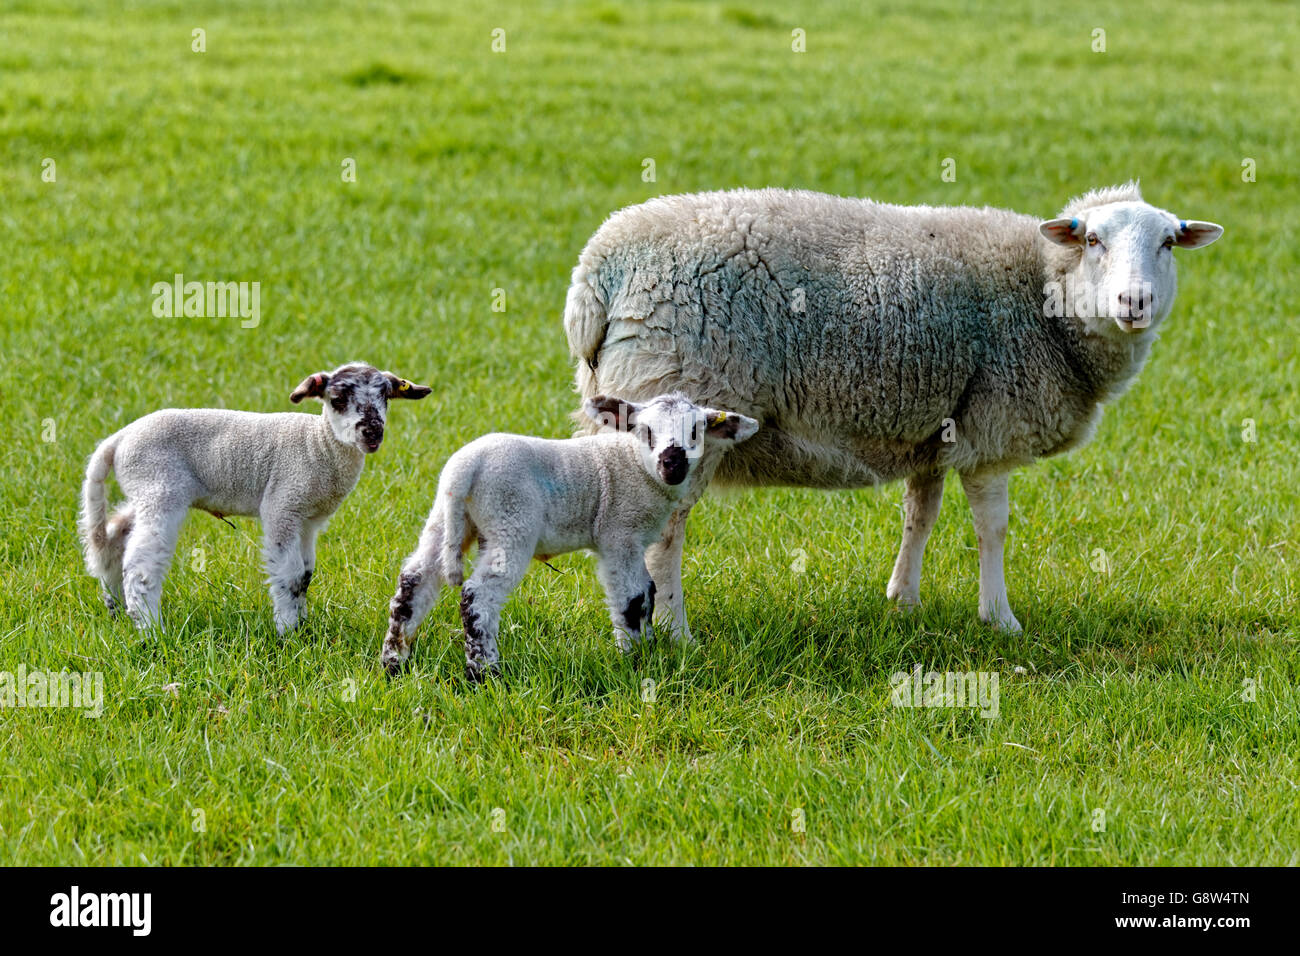 Une brebis et ses jeunes agneaux dans un champ du Wiltshire, Royaume-Uni. Banque D'Images